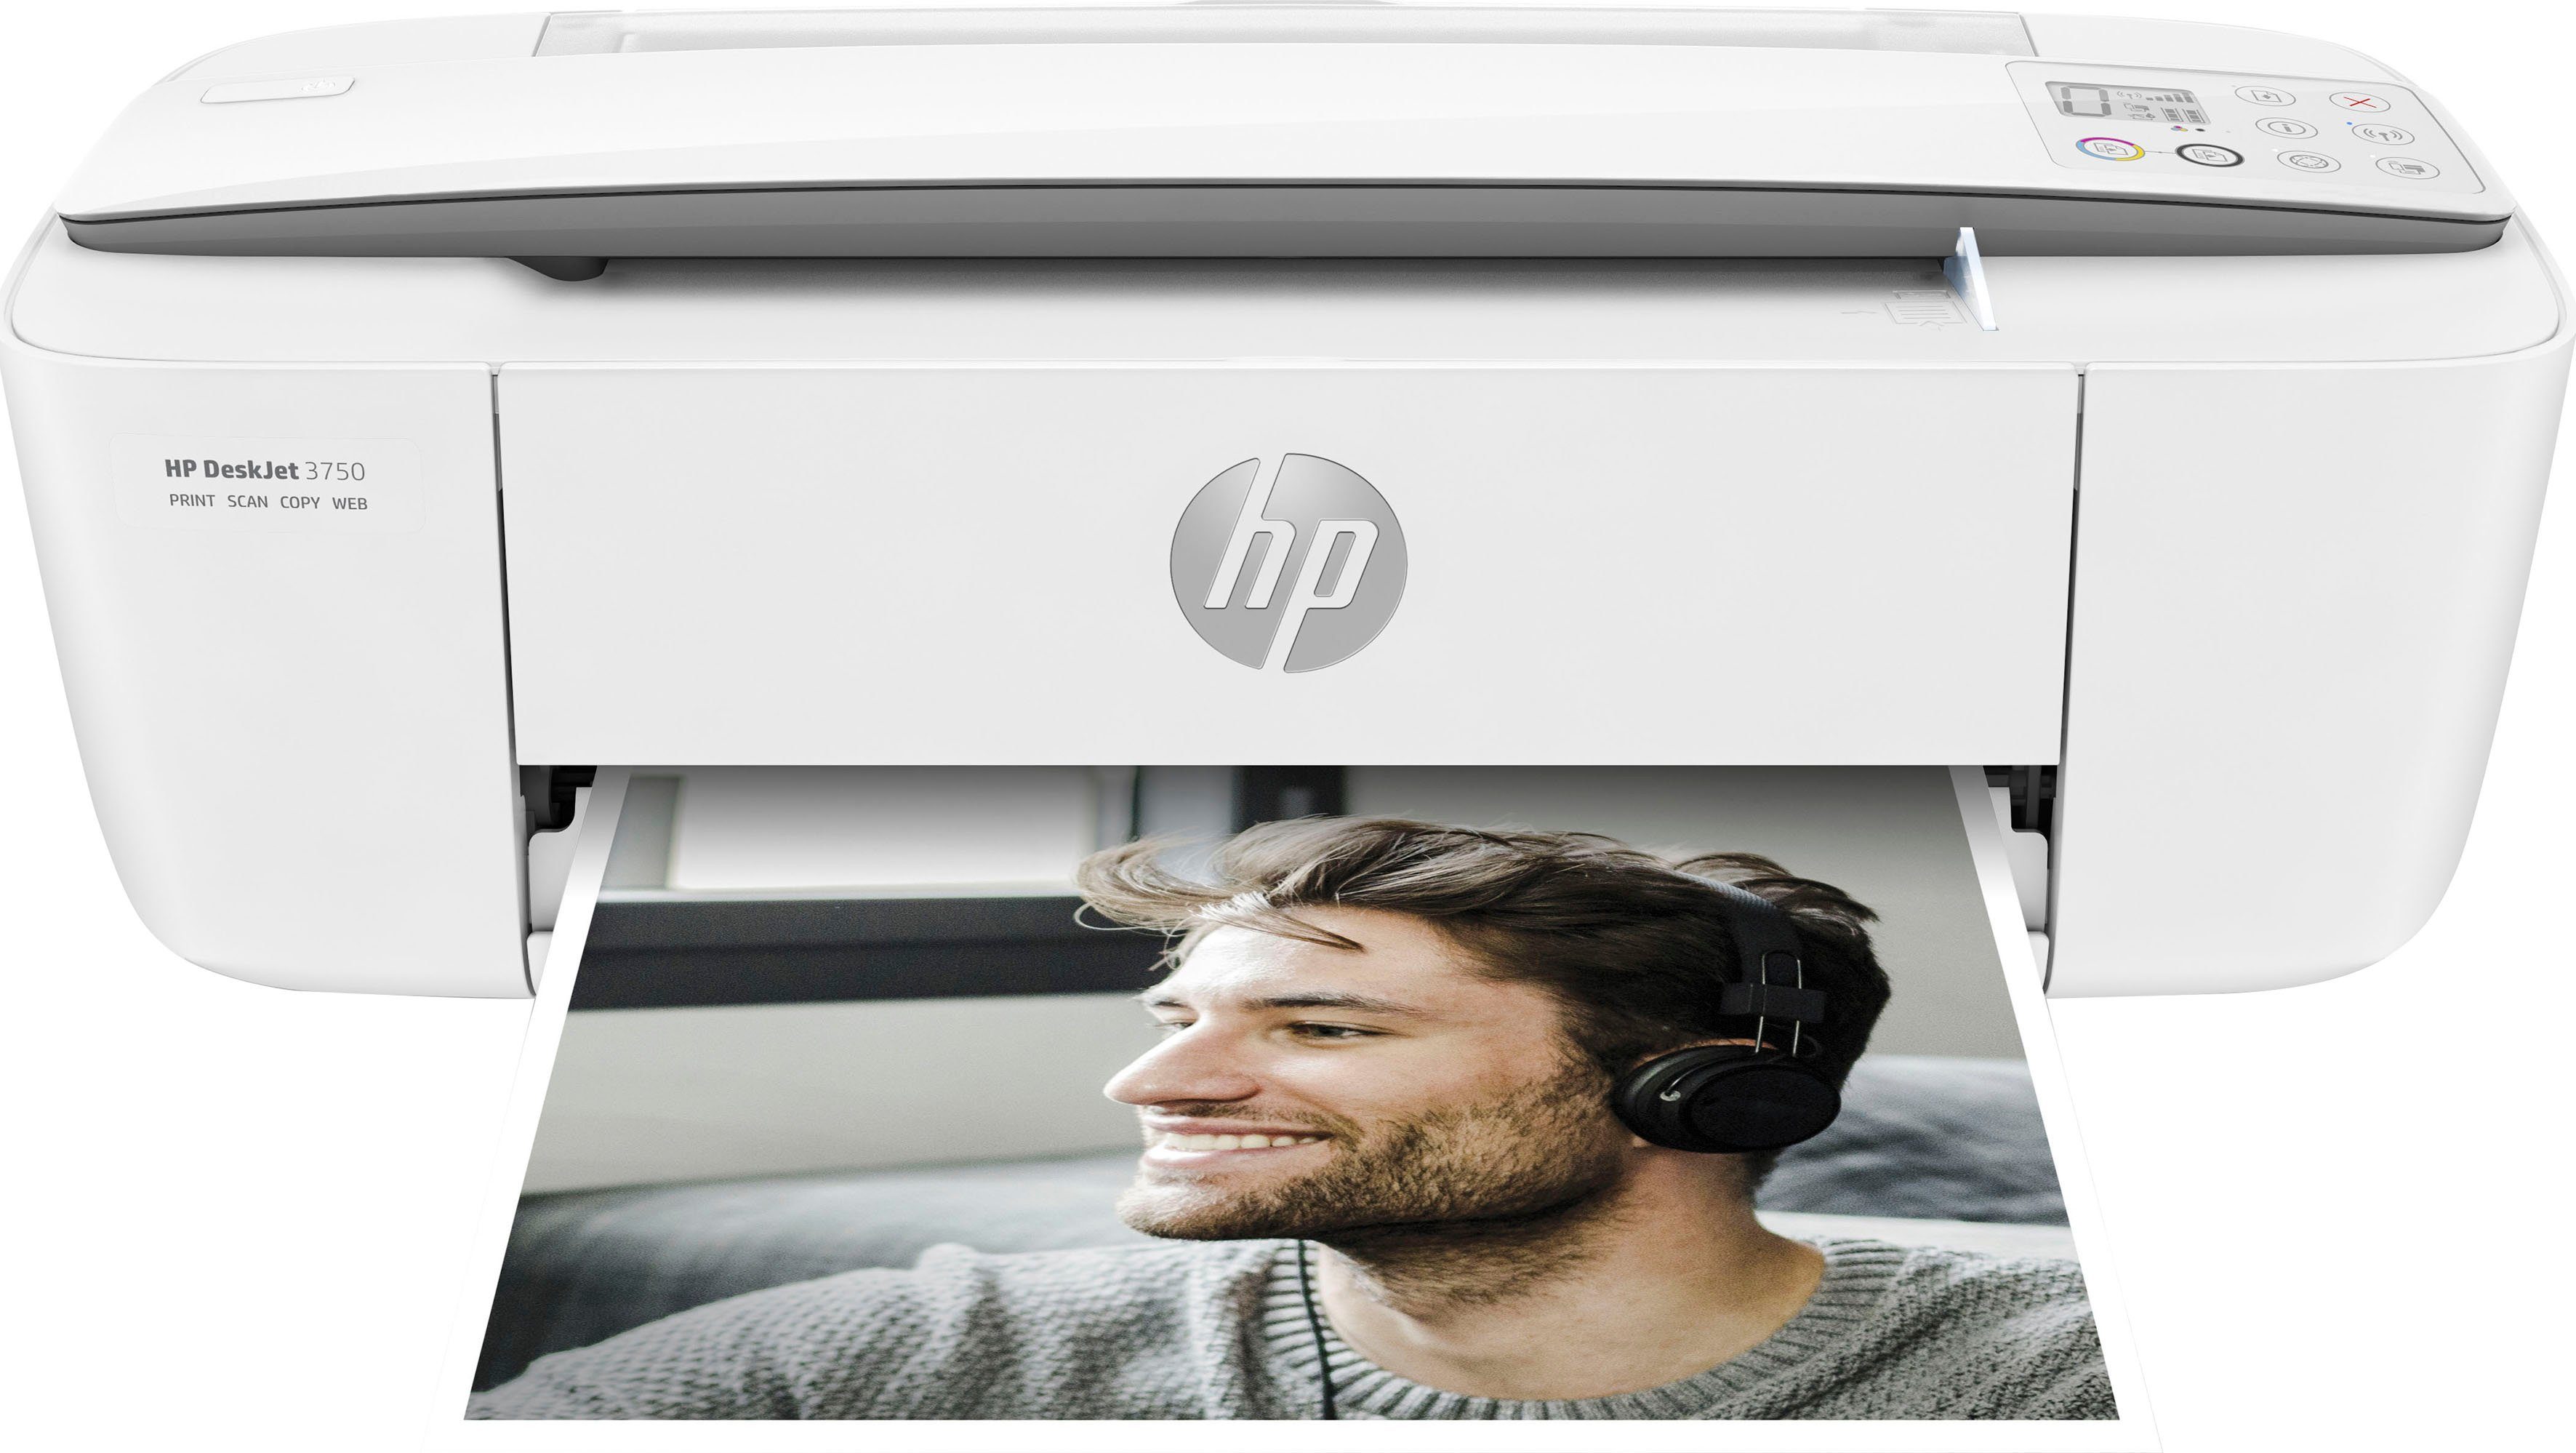 HP Drucker DeskJet 3750 Multifunktionsdrucker, (Wi-Fi), kompatibel) Ink HP+ (WLAN Instant